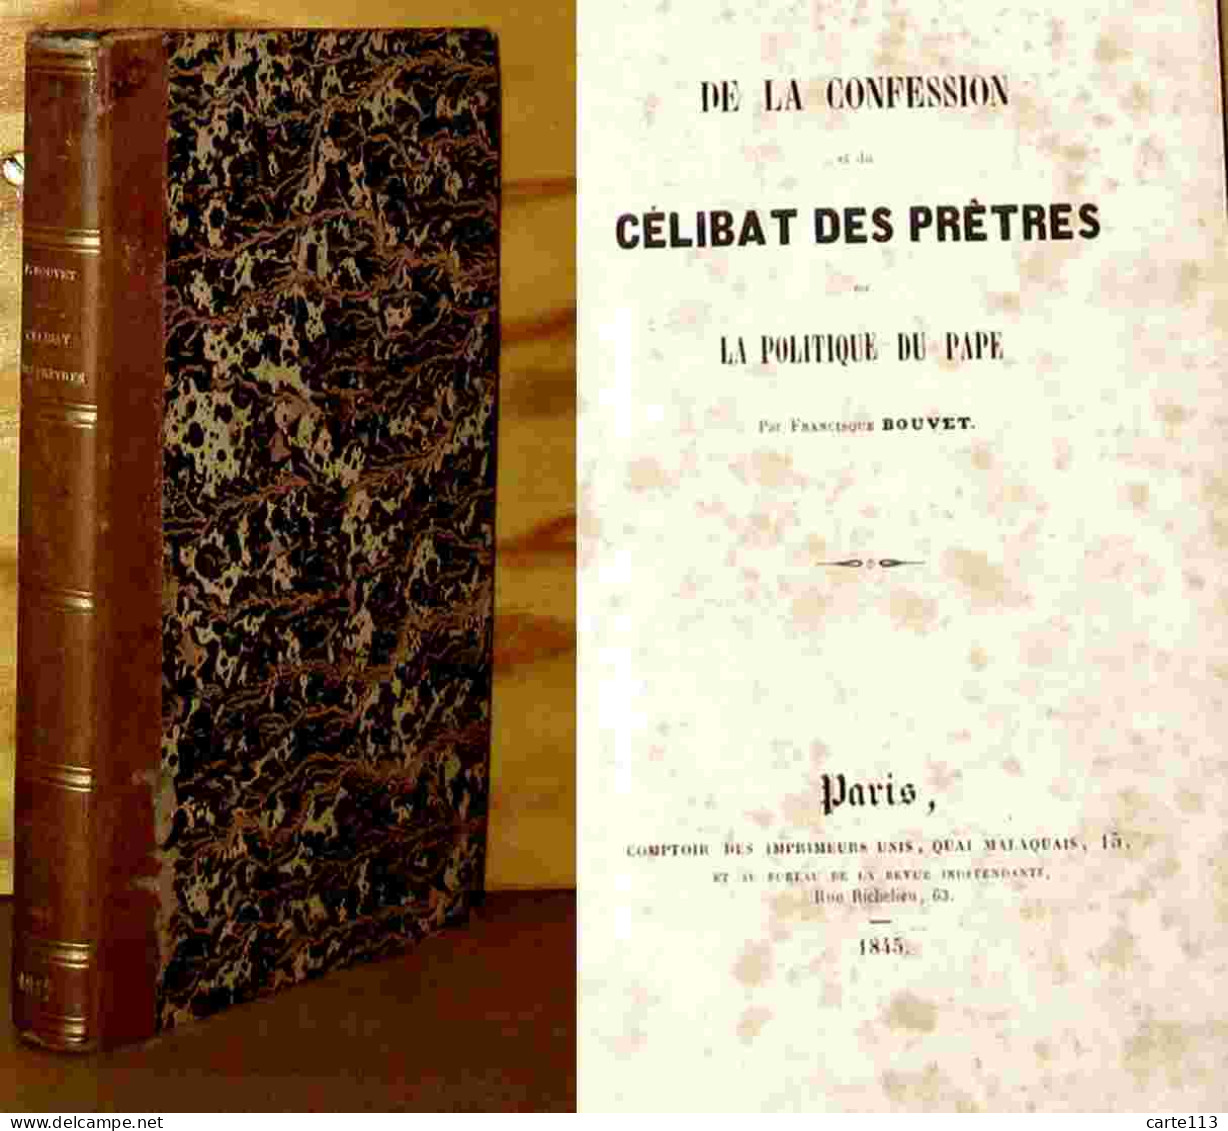 BOUVET Francisque - DE LA CONFESSION ET DU CELIBAT DES PRETRES OU LA POLITIQUE DU PAPE - 1801-1900